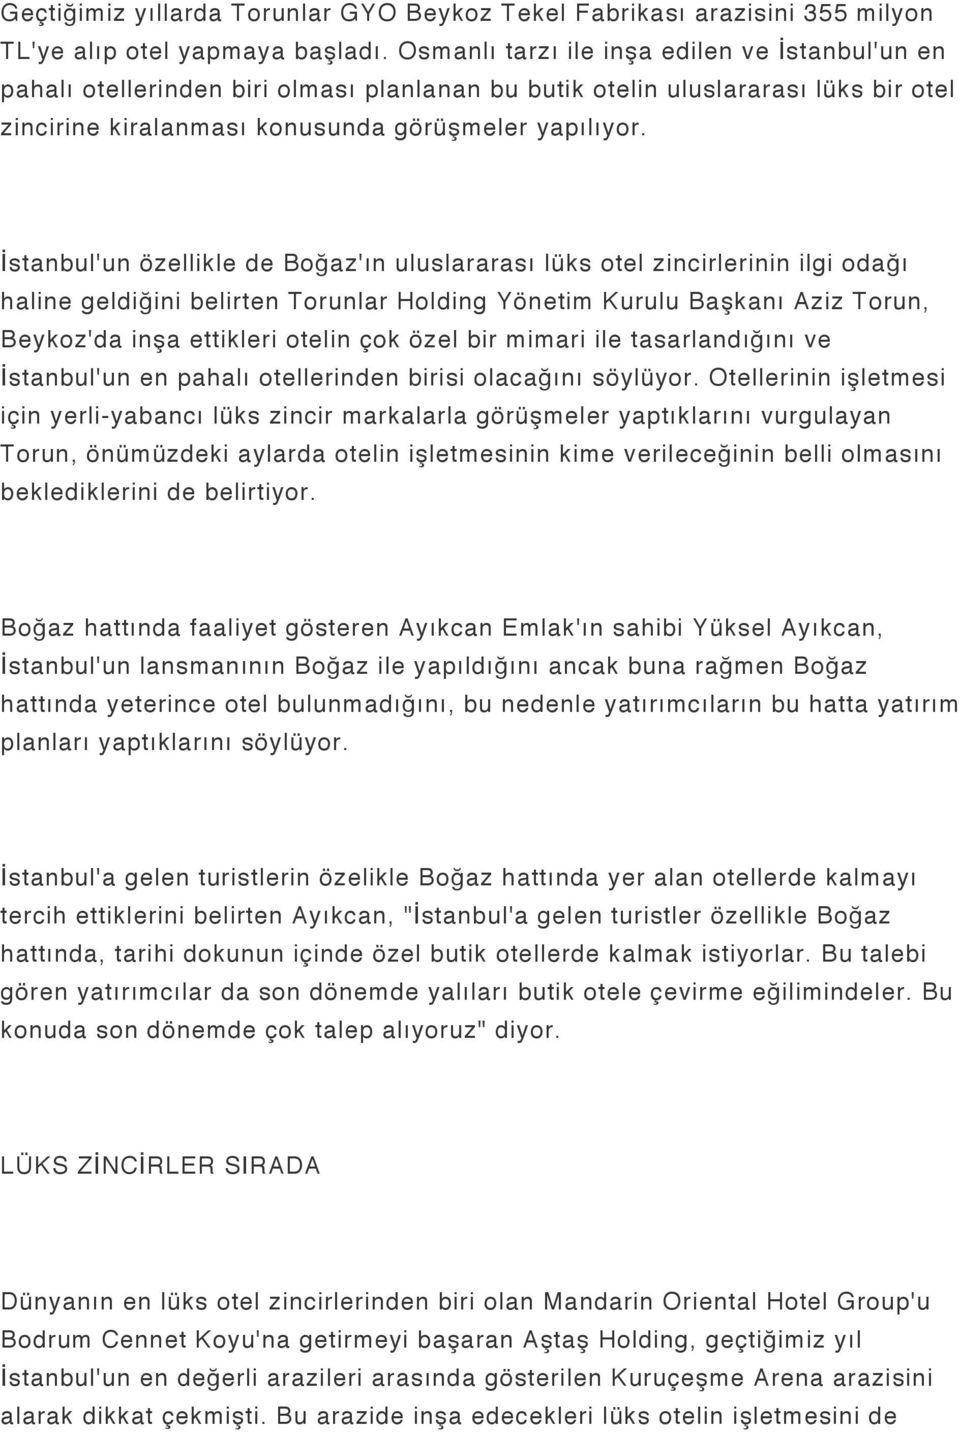 İstanbul'un özellikle de Boğaz'ın uluslararası lüks otel zincirlerinin ilgi odağı haline geldiğini belirten Torunlar Holding Yönetim Kurulu Başkanı Aziz Torun, Beykoz'da inşa ettikleri otelin çok